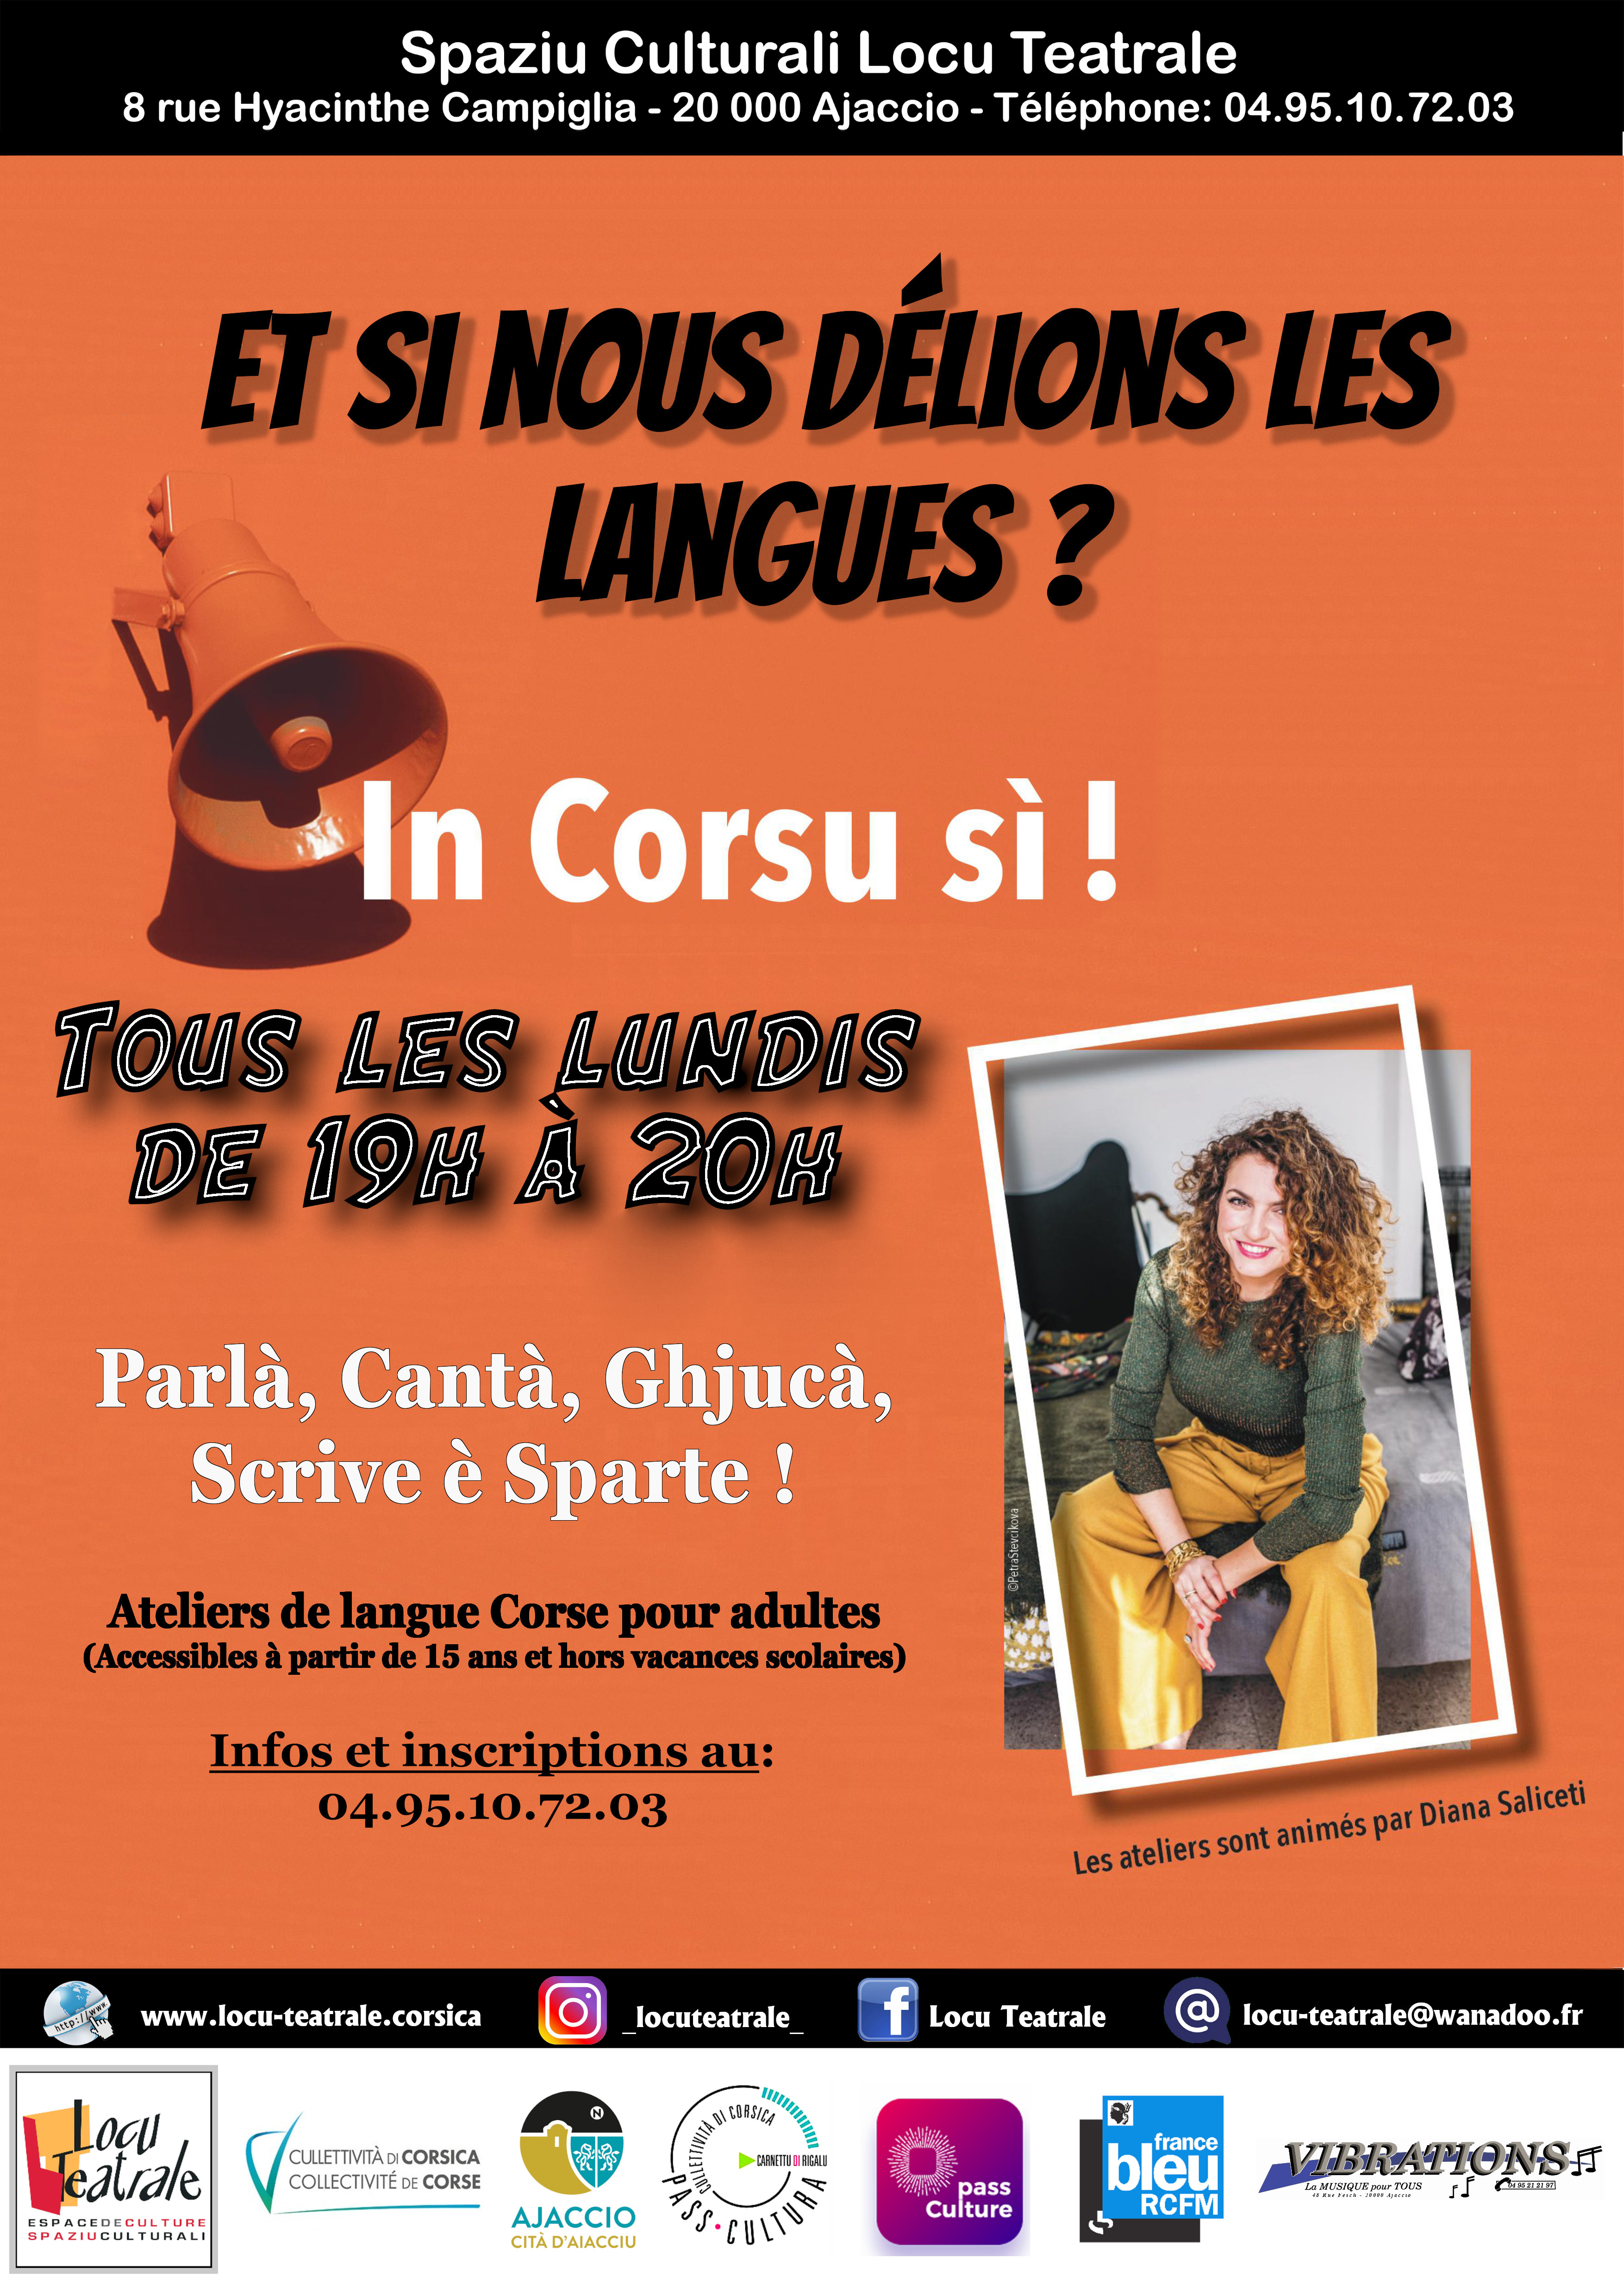 U Spaziu Culturali Locu Teatrale - Cours de Langue Corse U Spaziu Culturali Locu Teatrale 